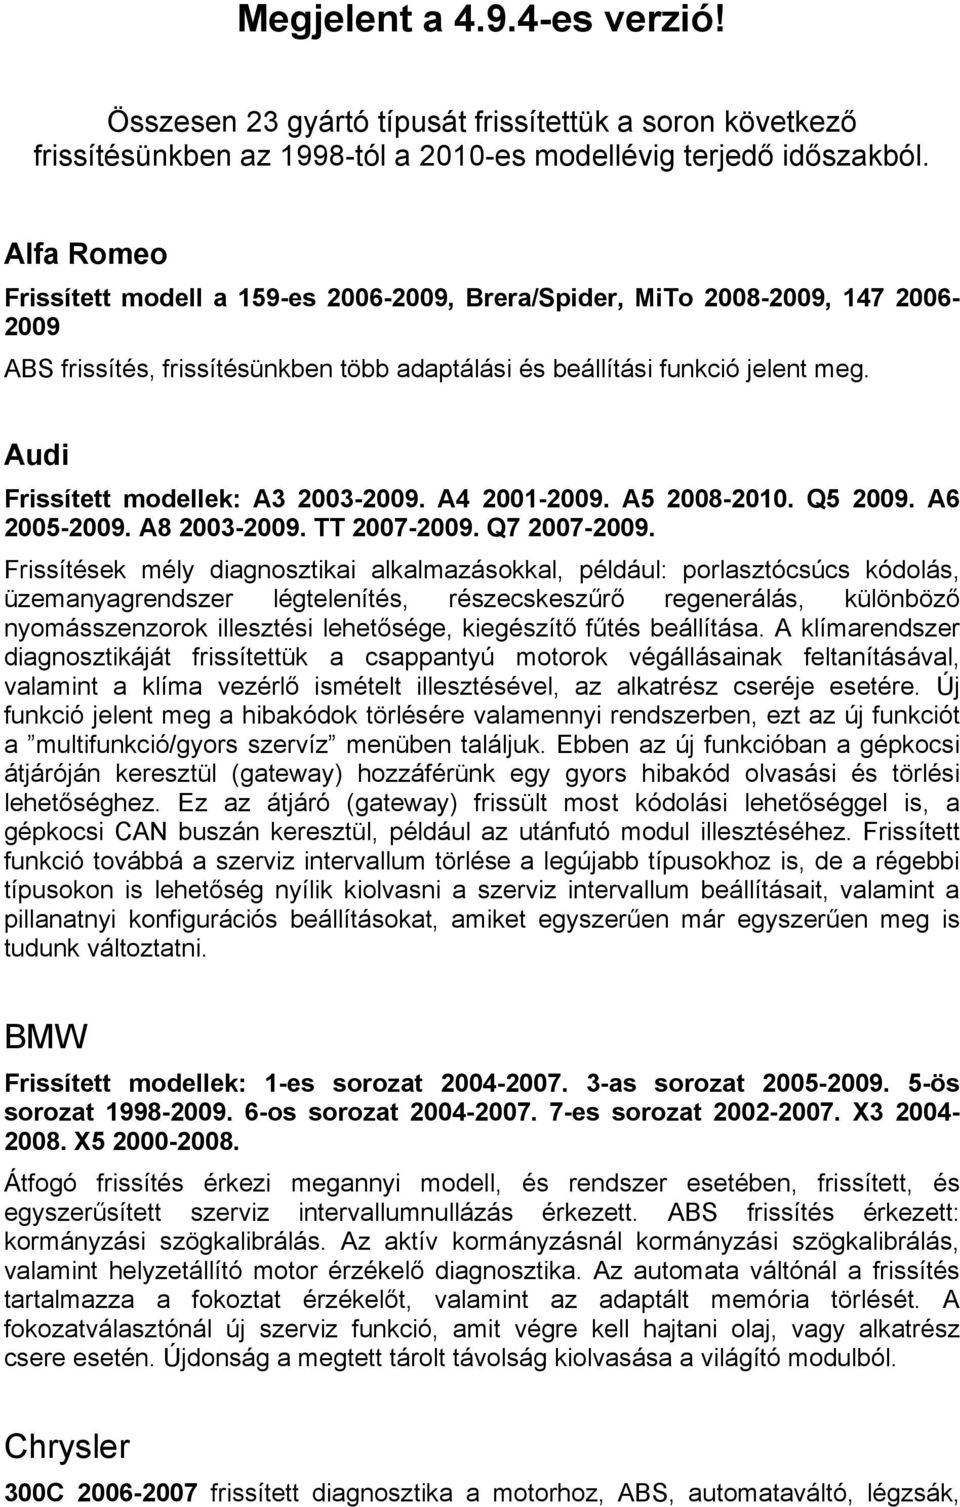 Audi Frissített modellek: A3 2003-2009. A4 2001-2009. A5 2008-2010. Q5 2009. A6 2005-2009. A8 2003-2009. TT 2007-2009. Q7 2007-2009.